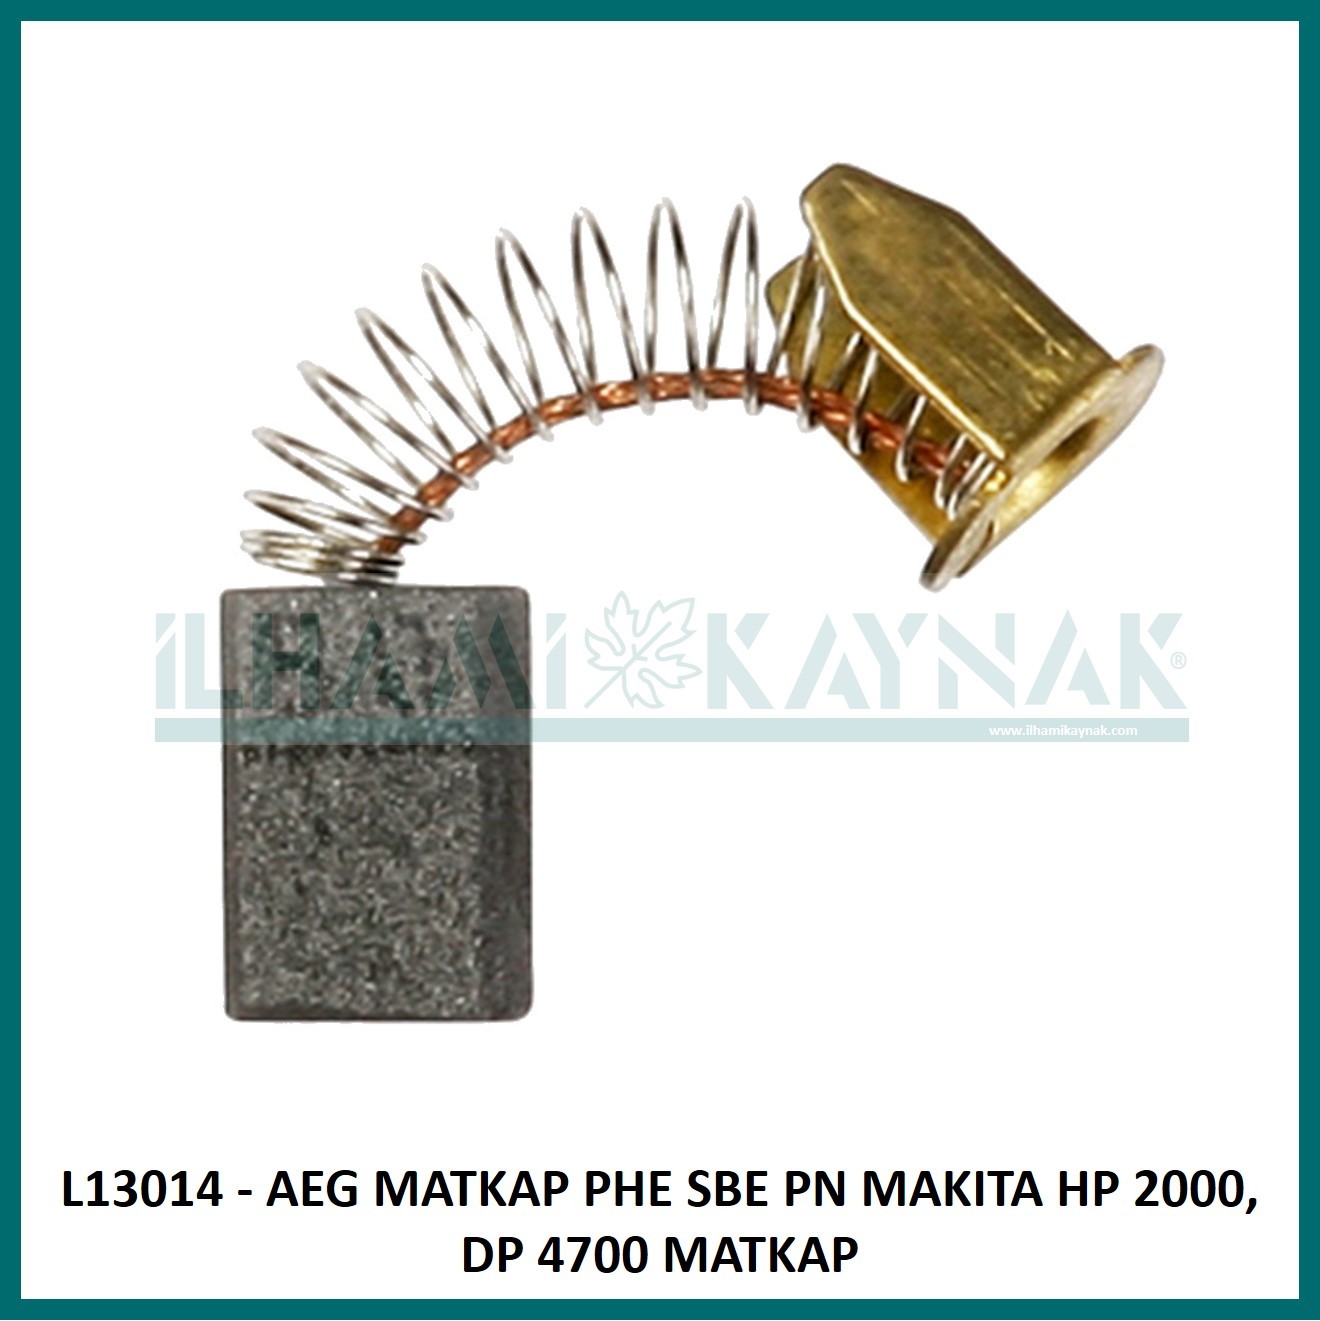 L13014 - AEG MATKAP PHE SBE PN MAKITA HP 2000, DP 4700 MATKAP - 5*8*15 mm - 100 Adet